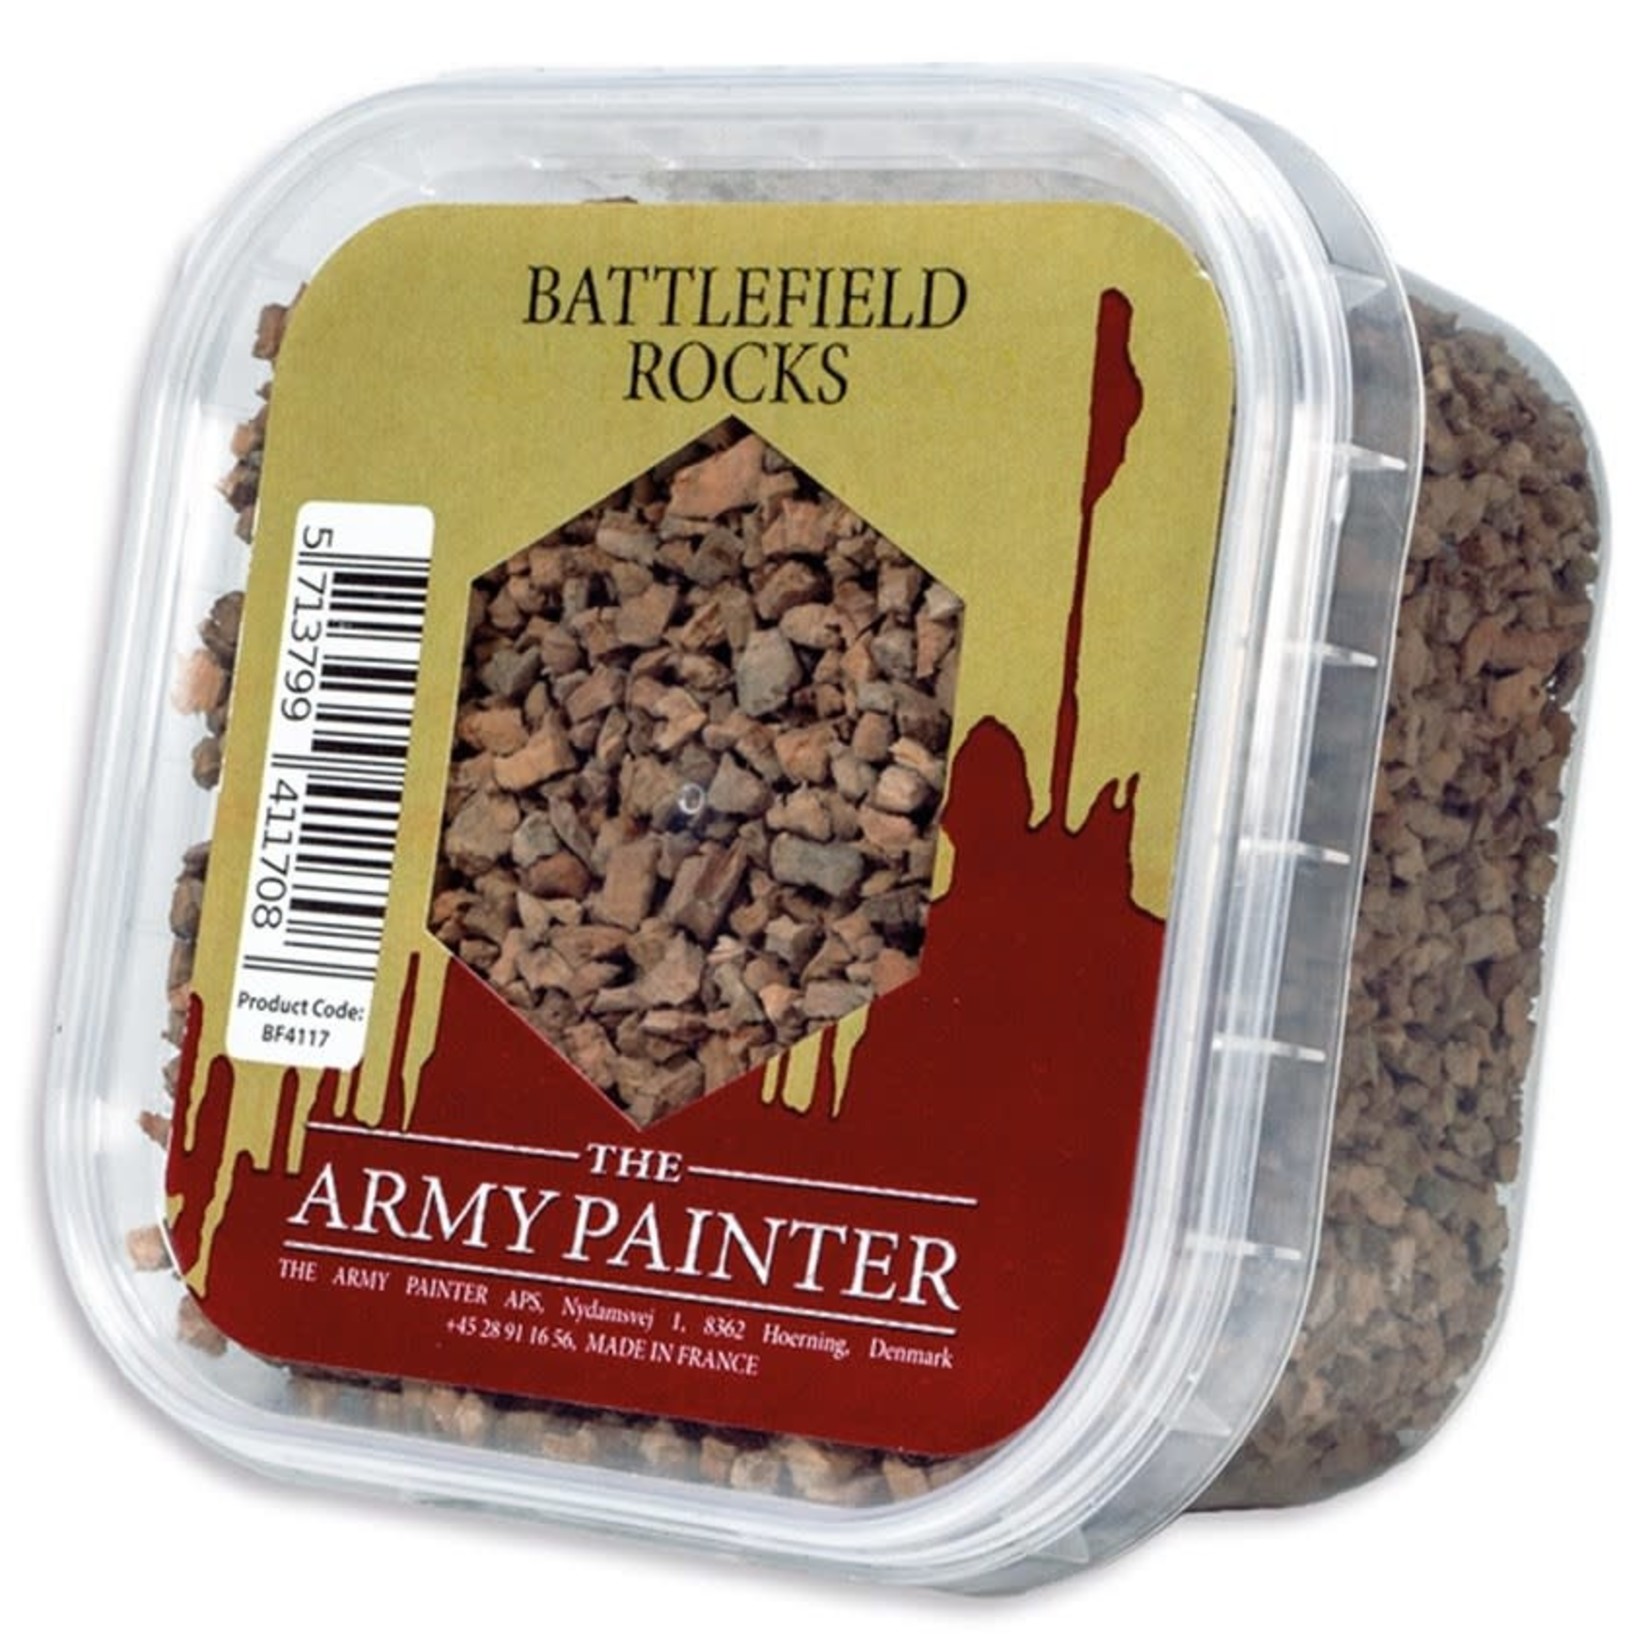 The Army Painter Battlefields: Battlefield Rocks